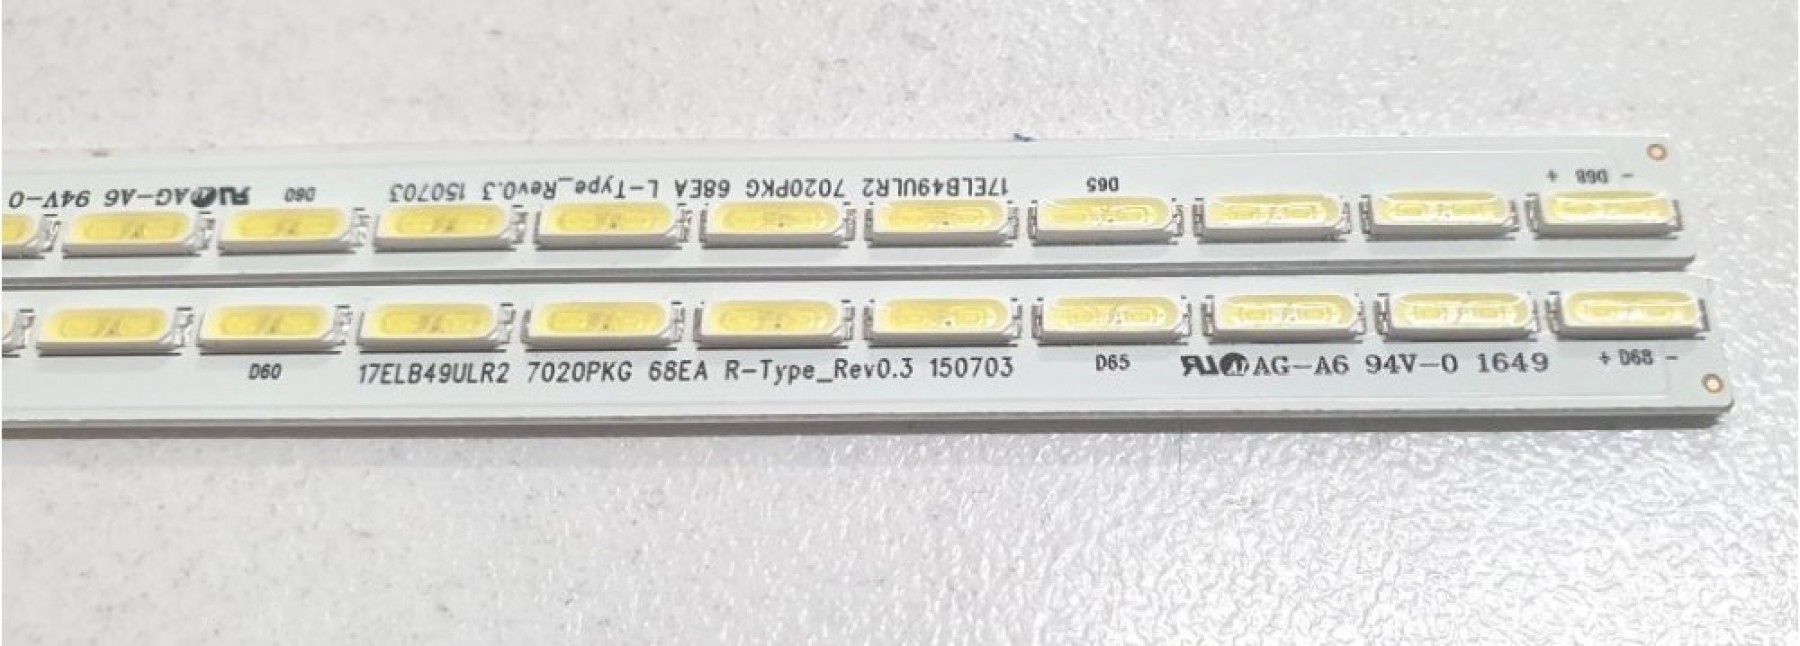 17ELB49ULR2 Backlight SET VES490QNEL-2D-U01 VES490QNEL-2D-D01, VESTEL 49